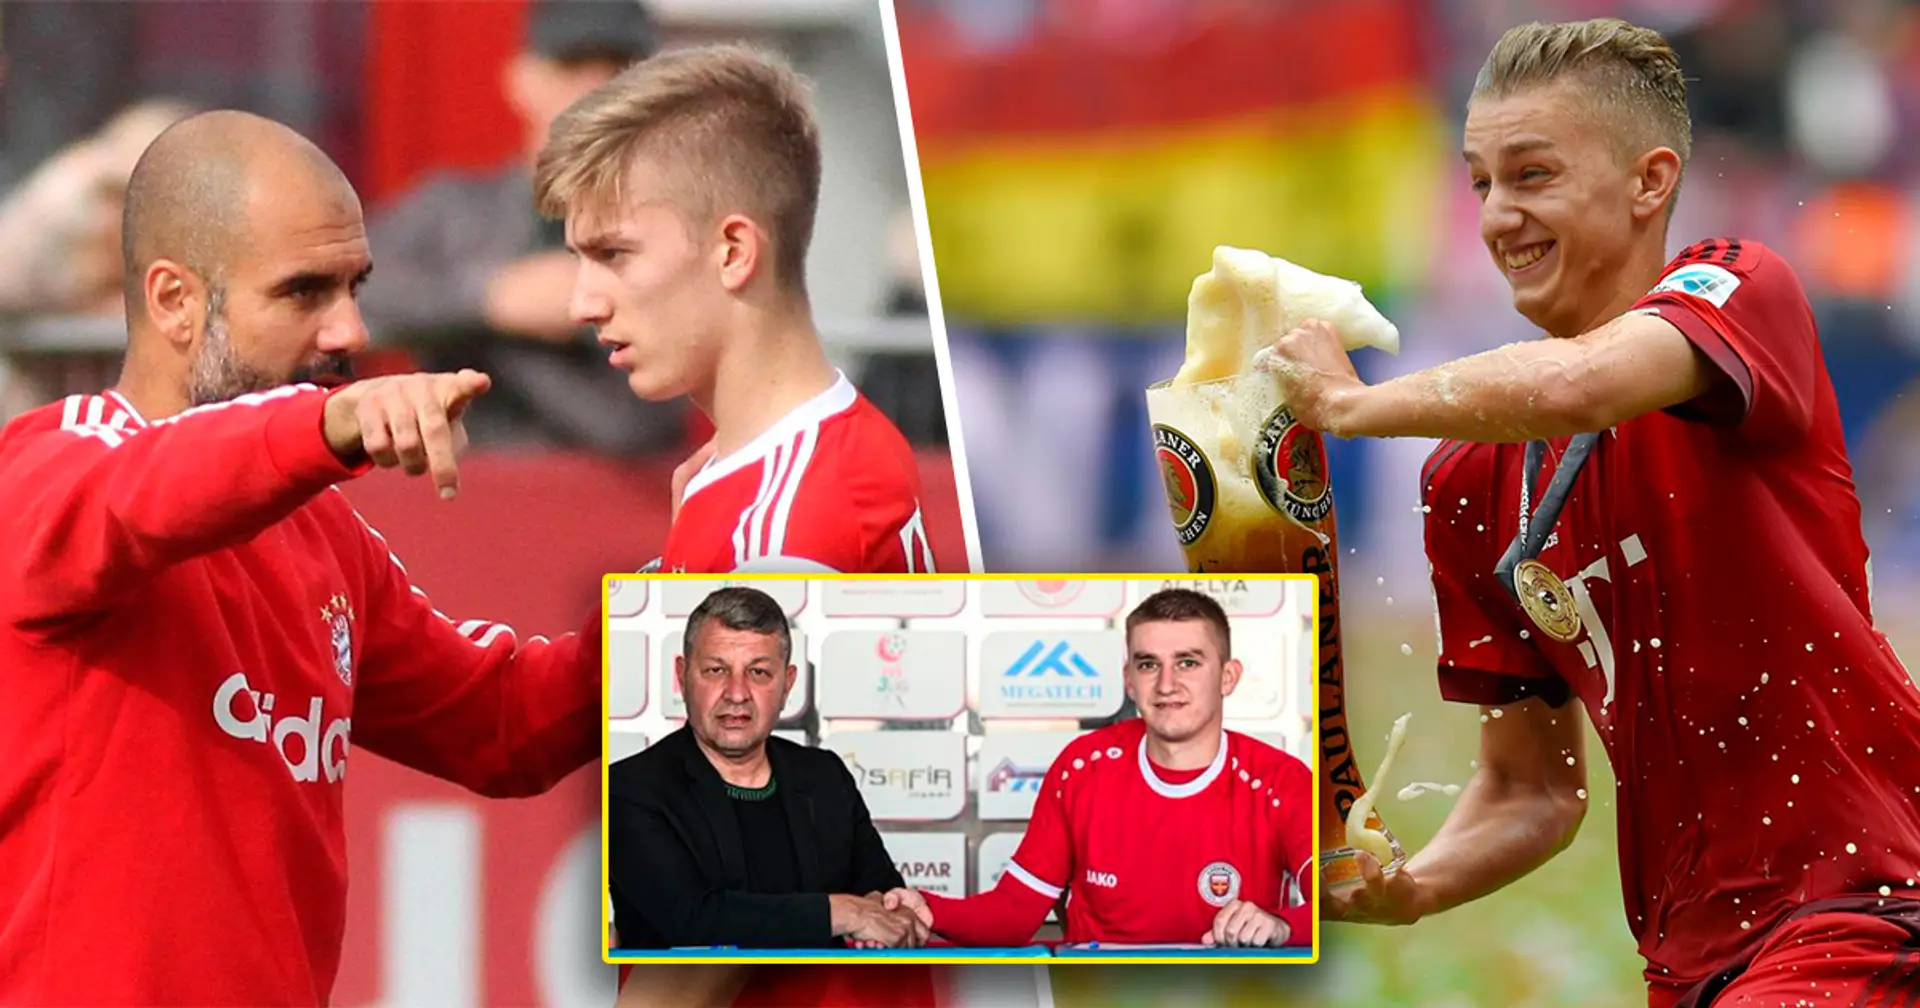 Vom großen Talent in die vierte türkische Liga: Das ist der Werdegang von Sinan Kurt, dem abgestürzten Wunderkind des FC Bayern